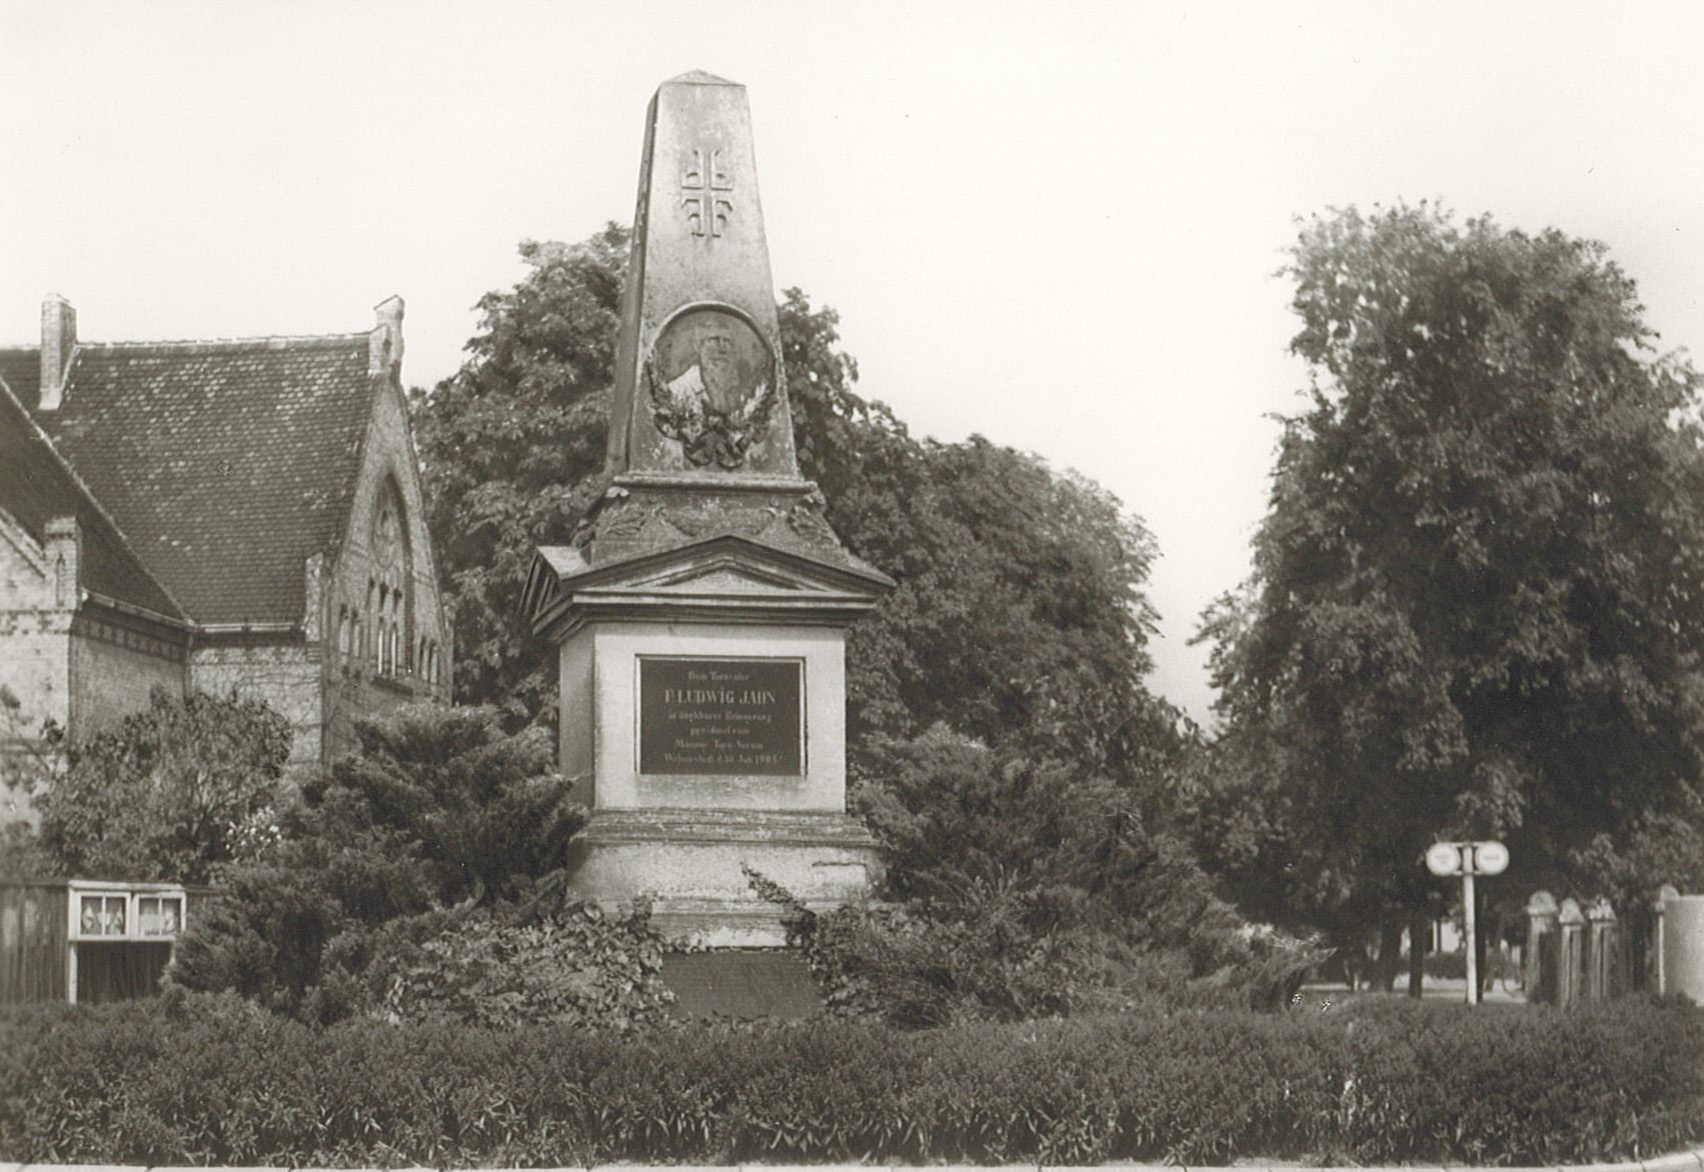 Ansichtskarte Ludwig-Jahn-Denkmal, Wolmirstedt (1966?) (Museum Wolmirstedt RR-F)